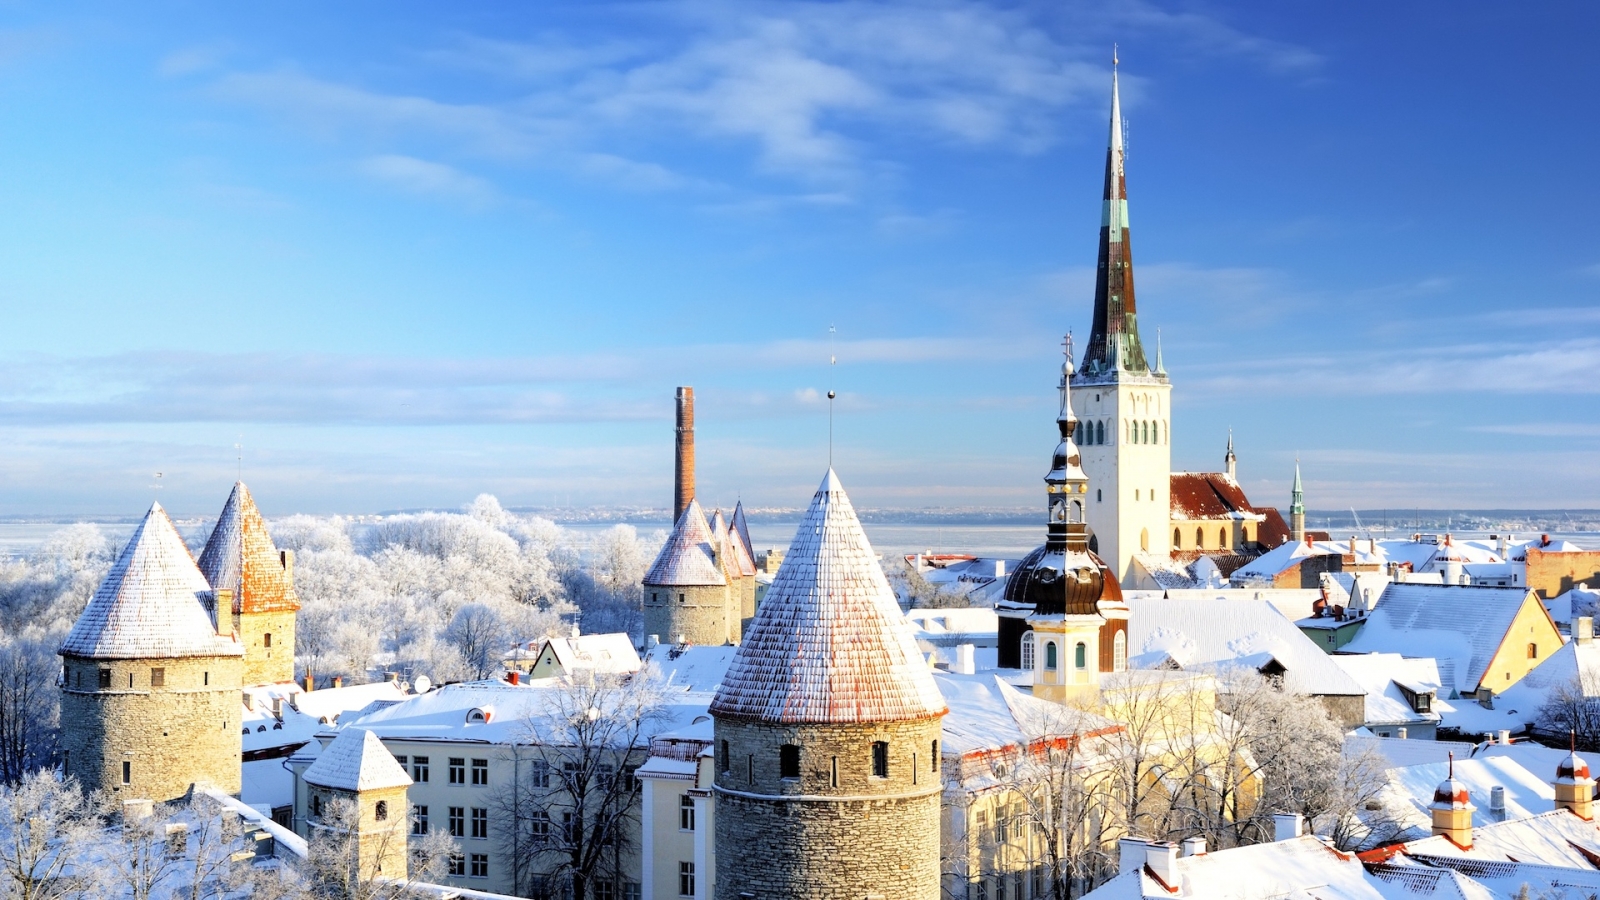 Città di Tallinn.  Estonia.  Neve sugli alberi in inverno